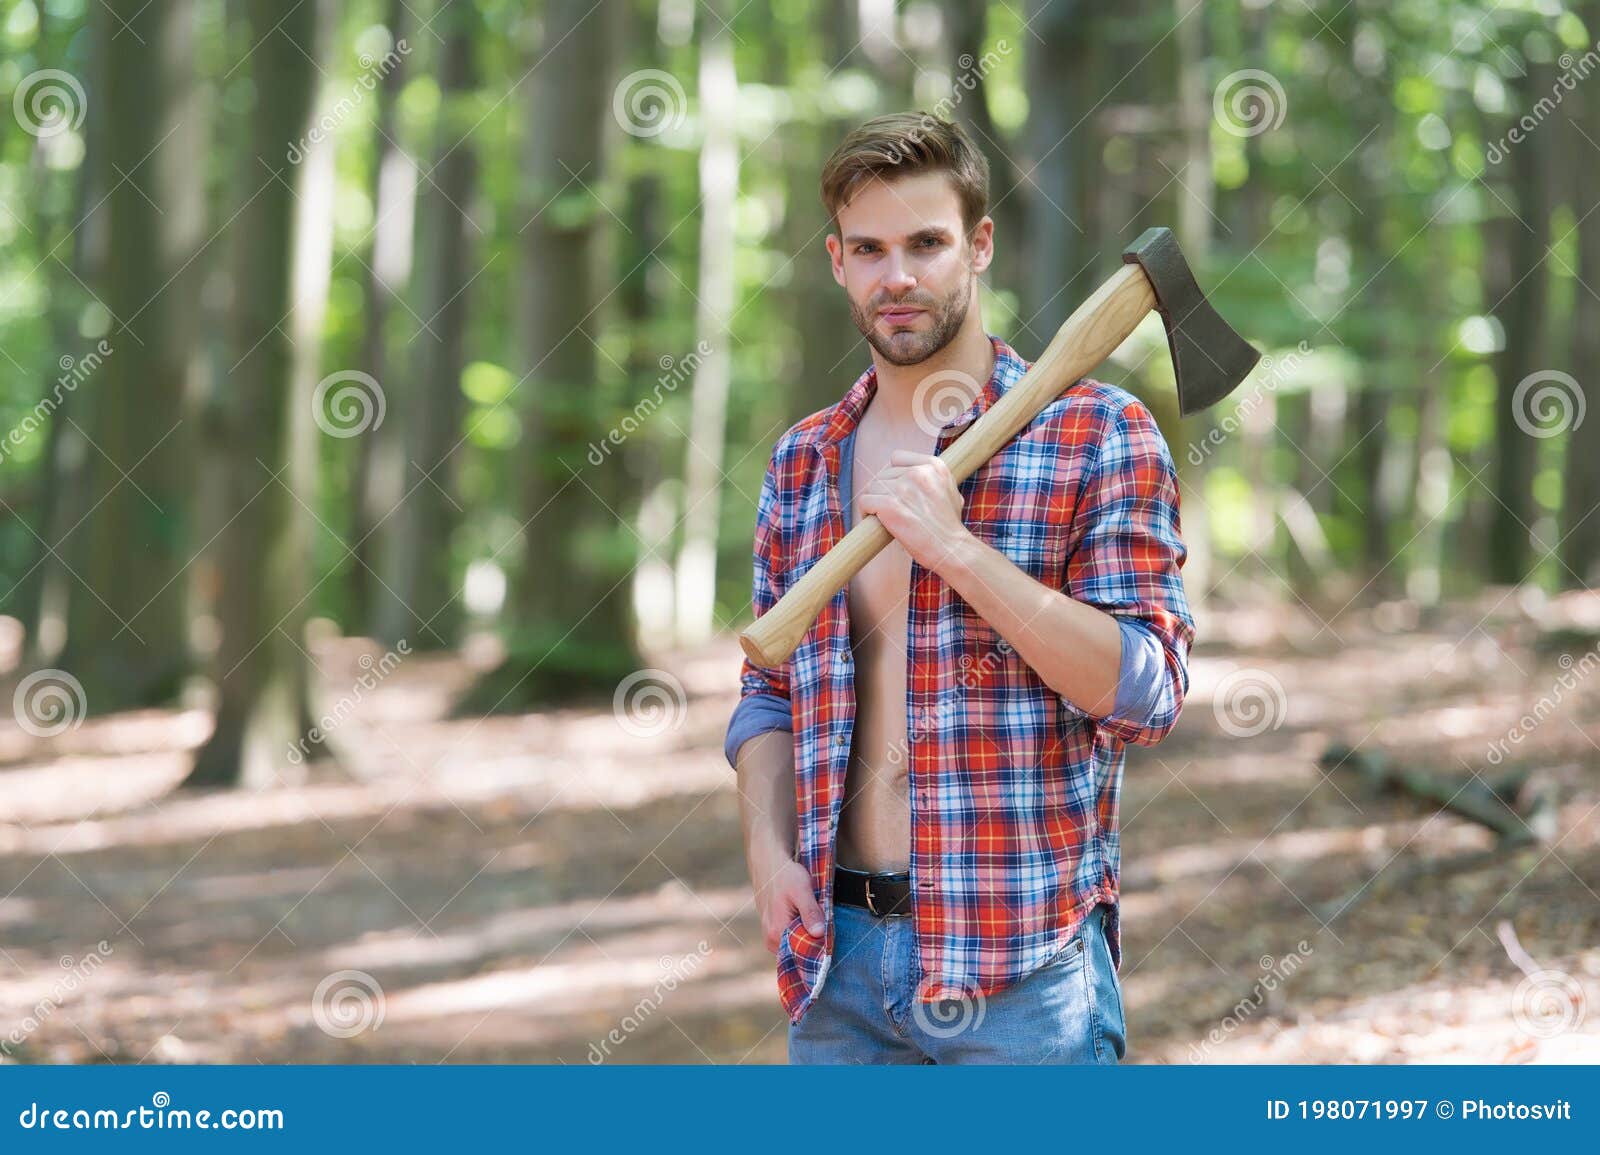 man in lumberjack shirt